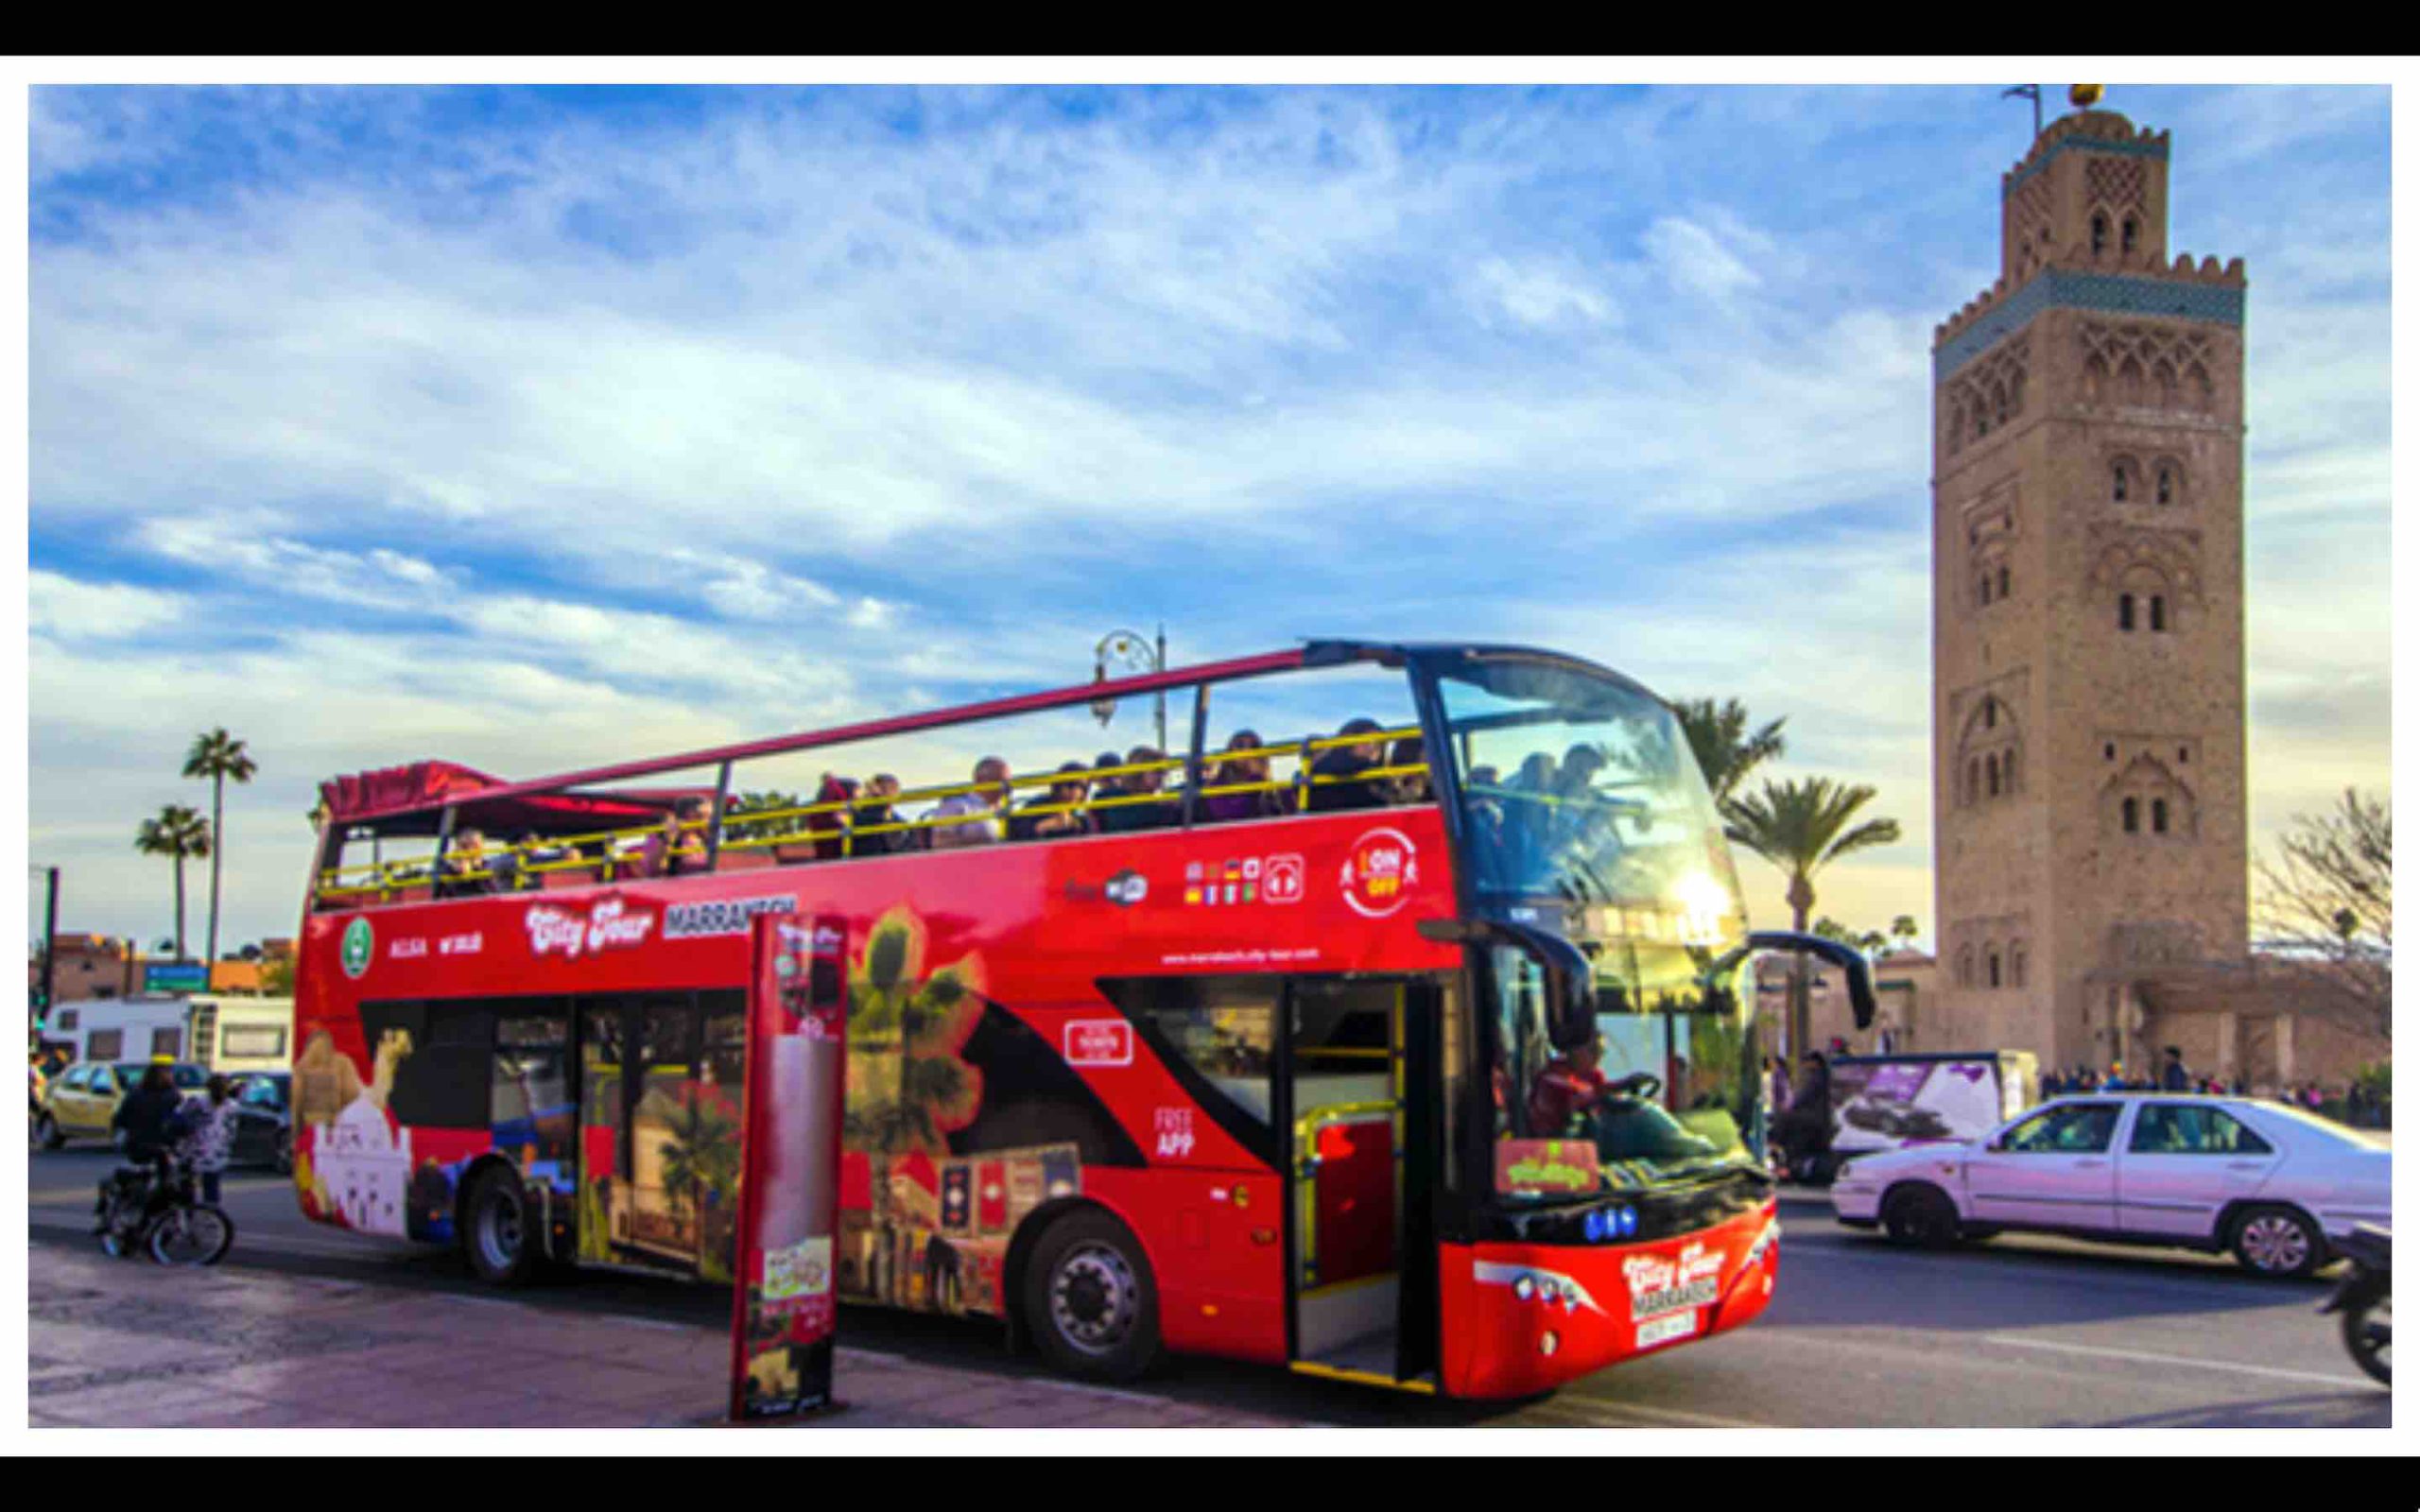 Maroc: des bus à impériale pour un circuit touristique à Casablanca